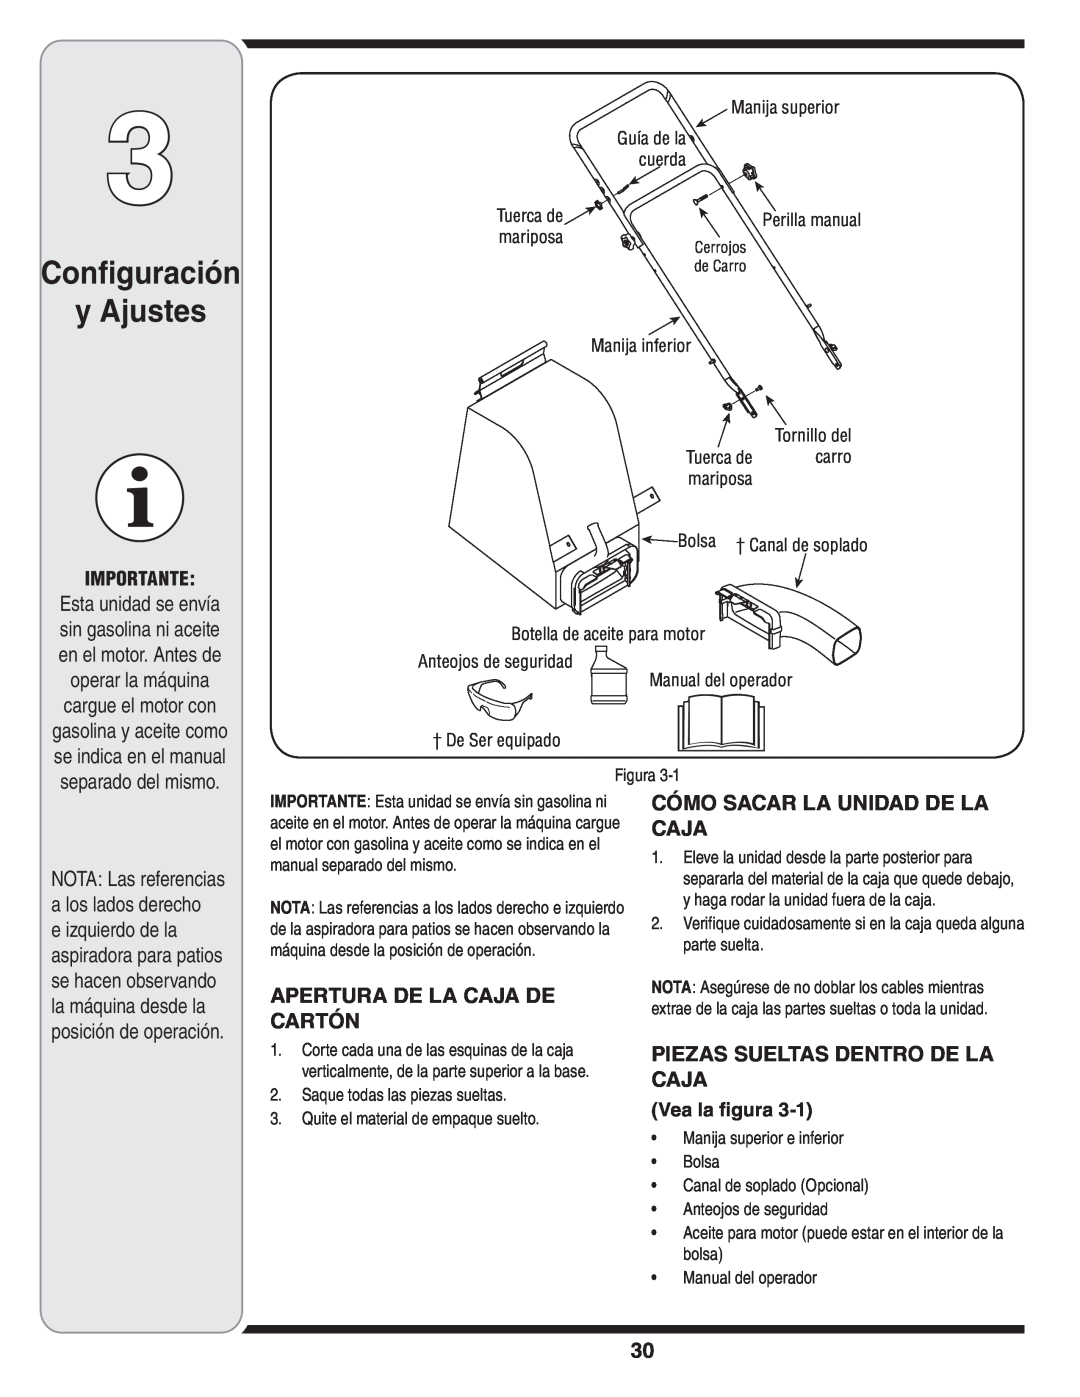 MTD Series 020 warranty Configuración y Ajustes, Apertura De La Caja De Cartón, Cómo Sacar La Unidad De La Caja, Importante 